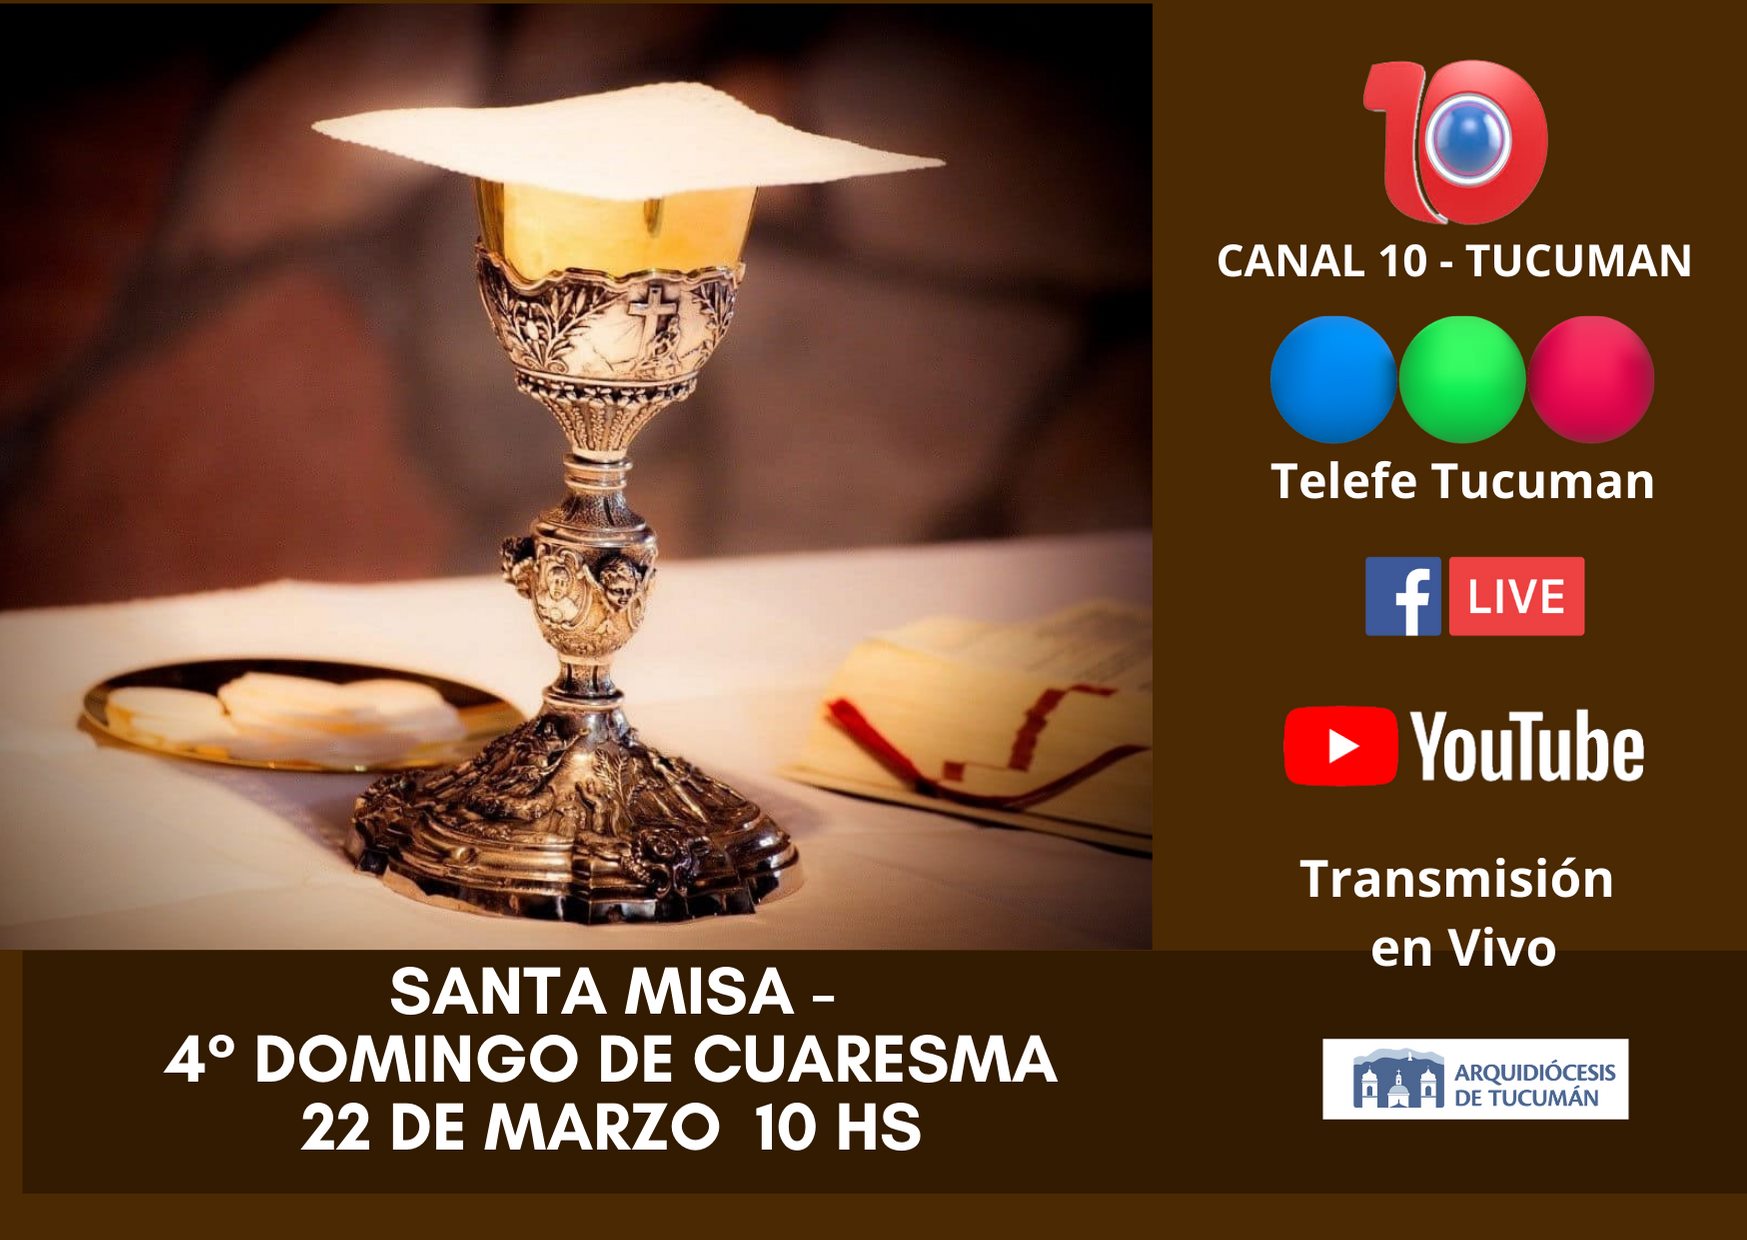 La Santa Misa se transmitirá en vivo a todos los tucumanos Tucumán